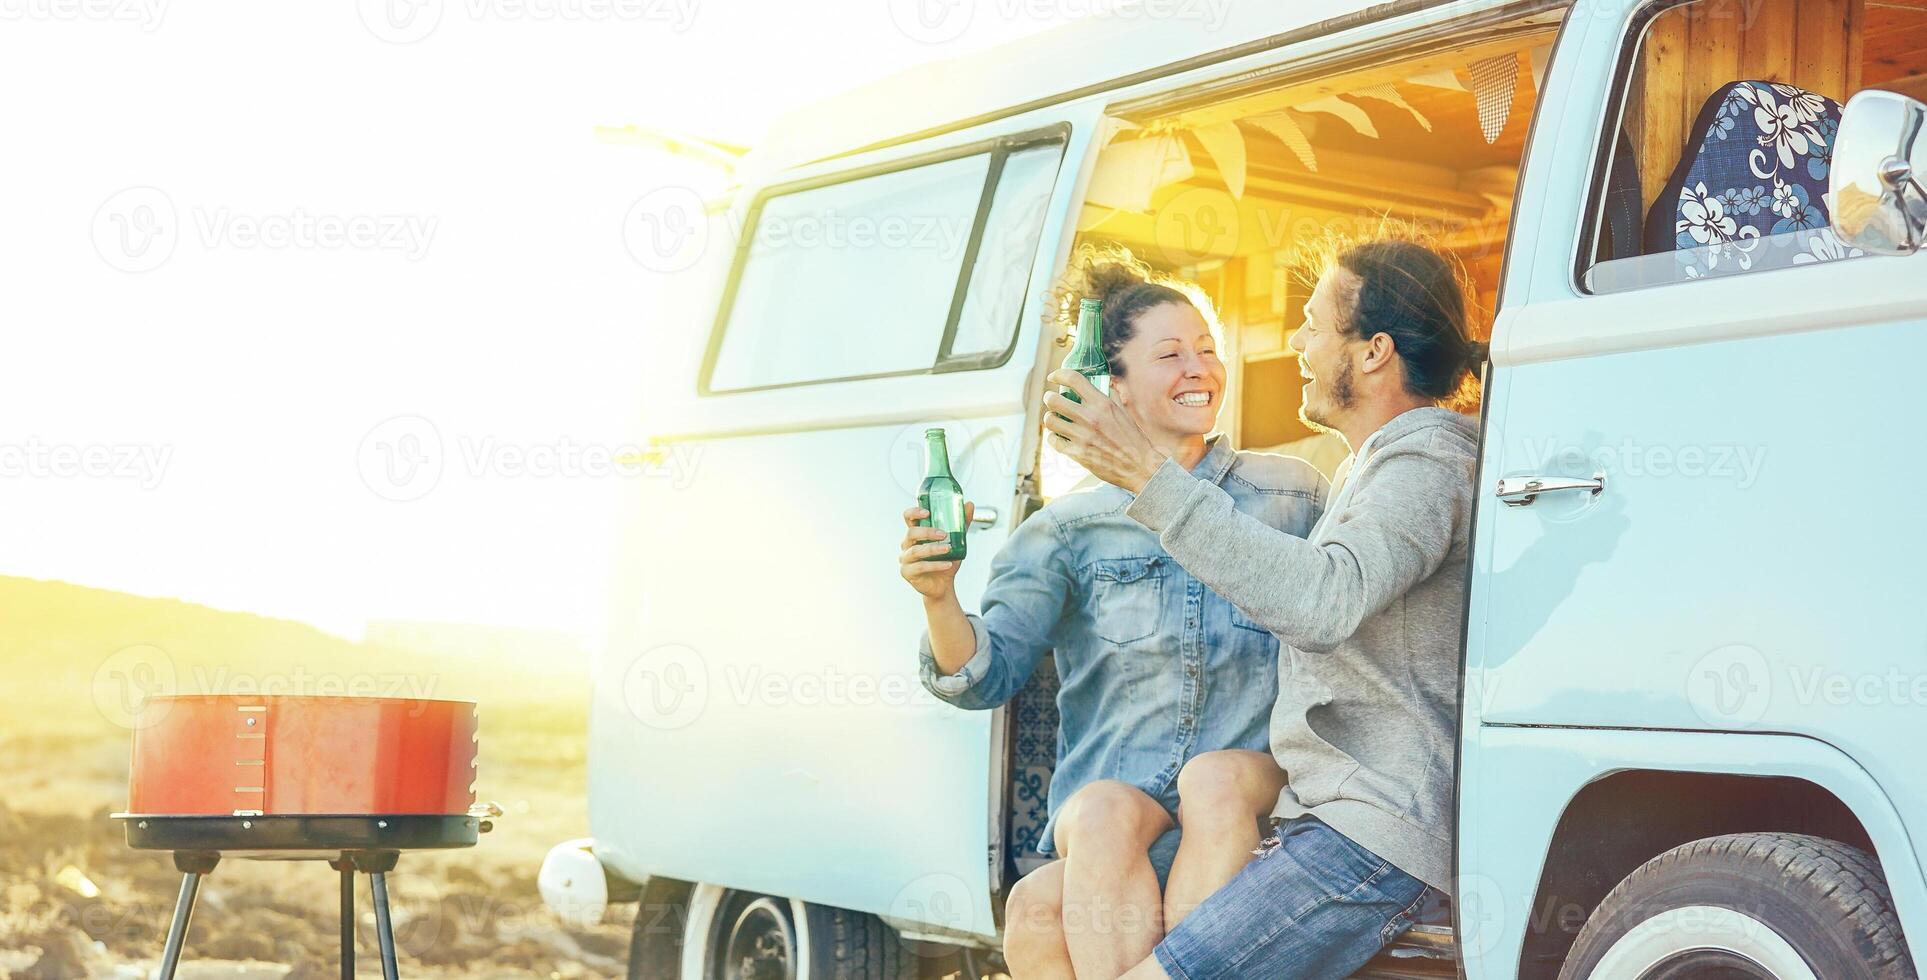 resa par har roligt dricka öl Sammanträde på deras årgång husbil mini skåpbil - Lycklig människor med deras sällskapsdjur njuter utegrill på solnedgång under en bilresa - begrepp av semester livsstil och kärlek foto